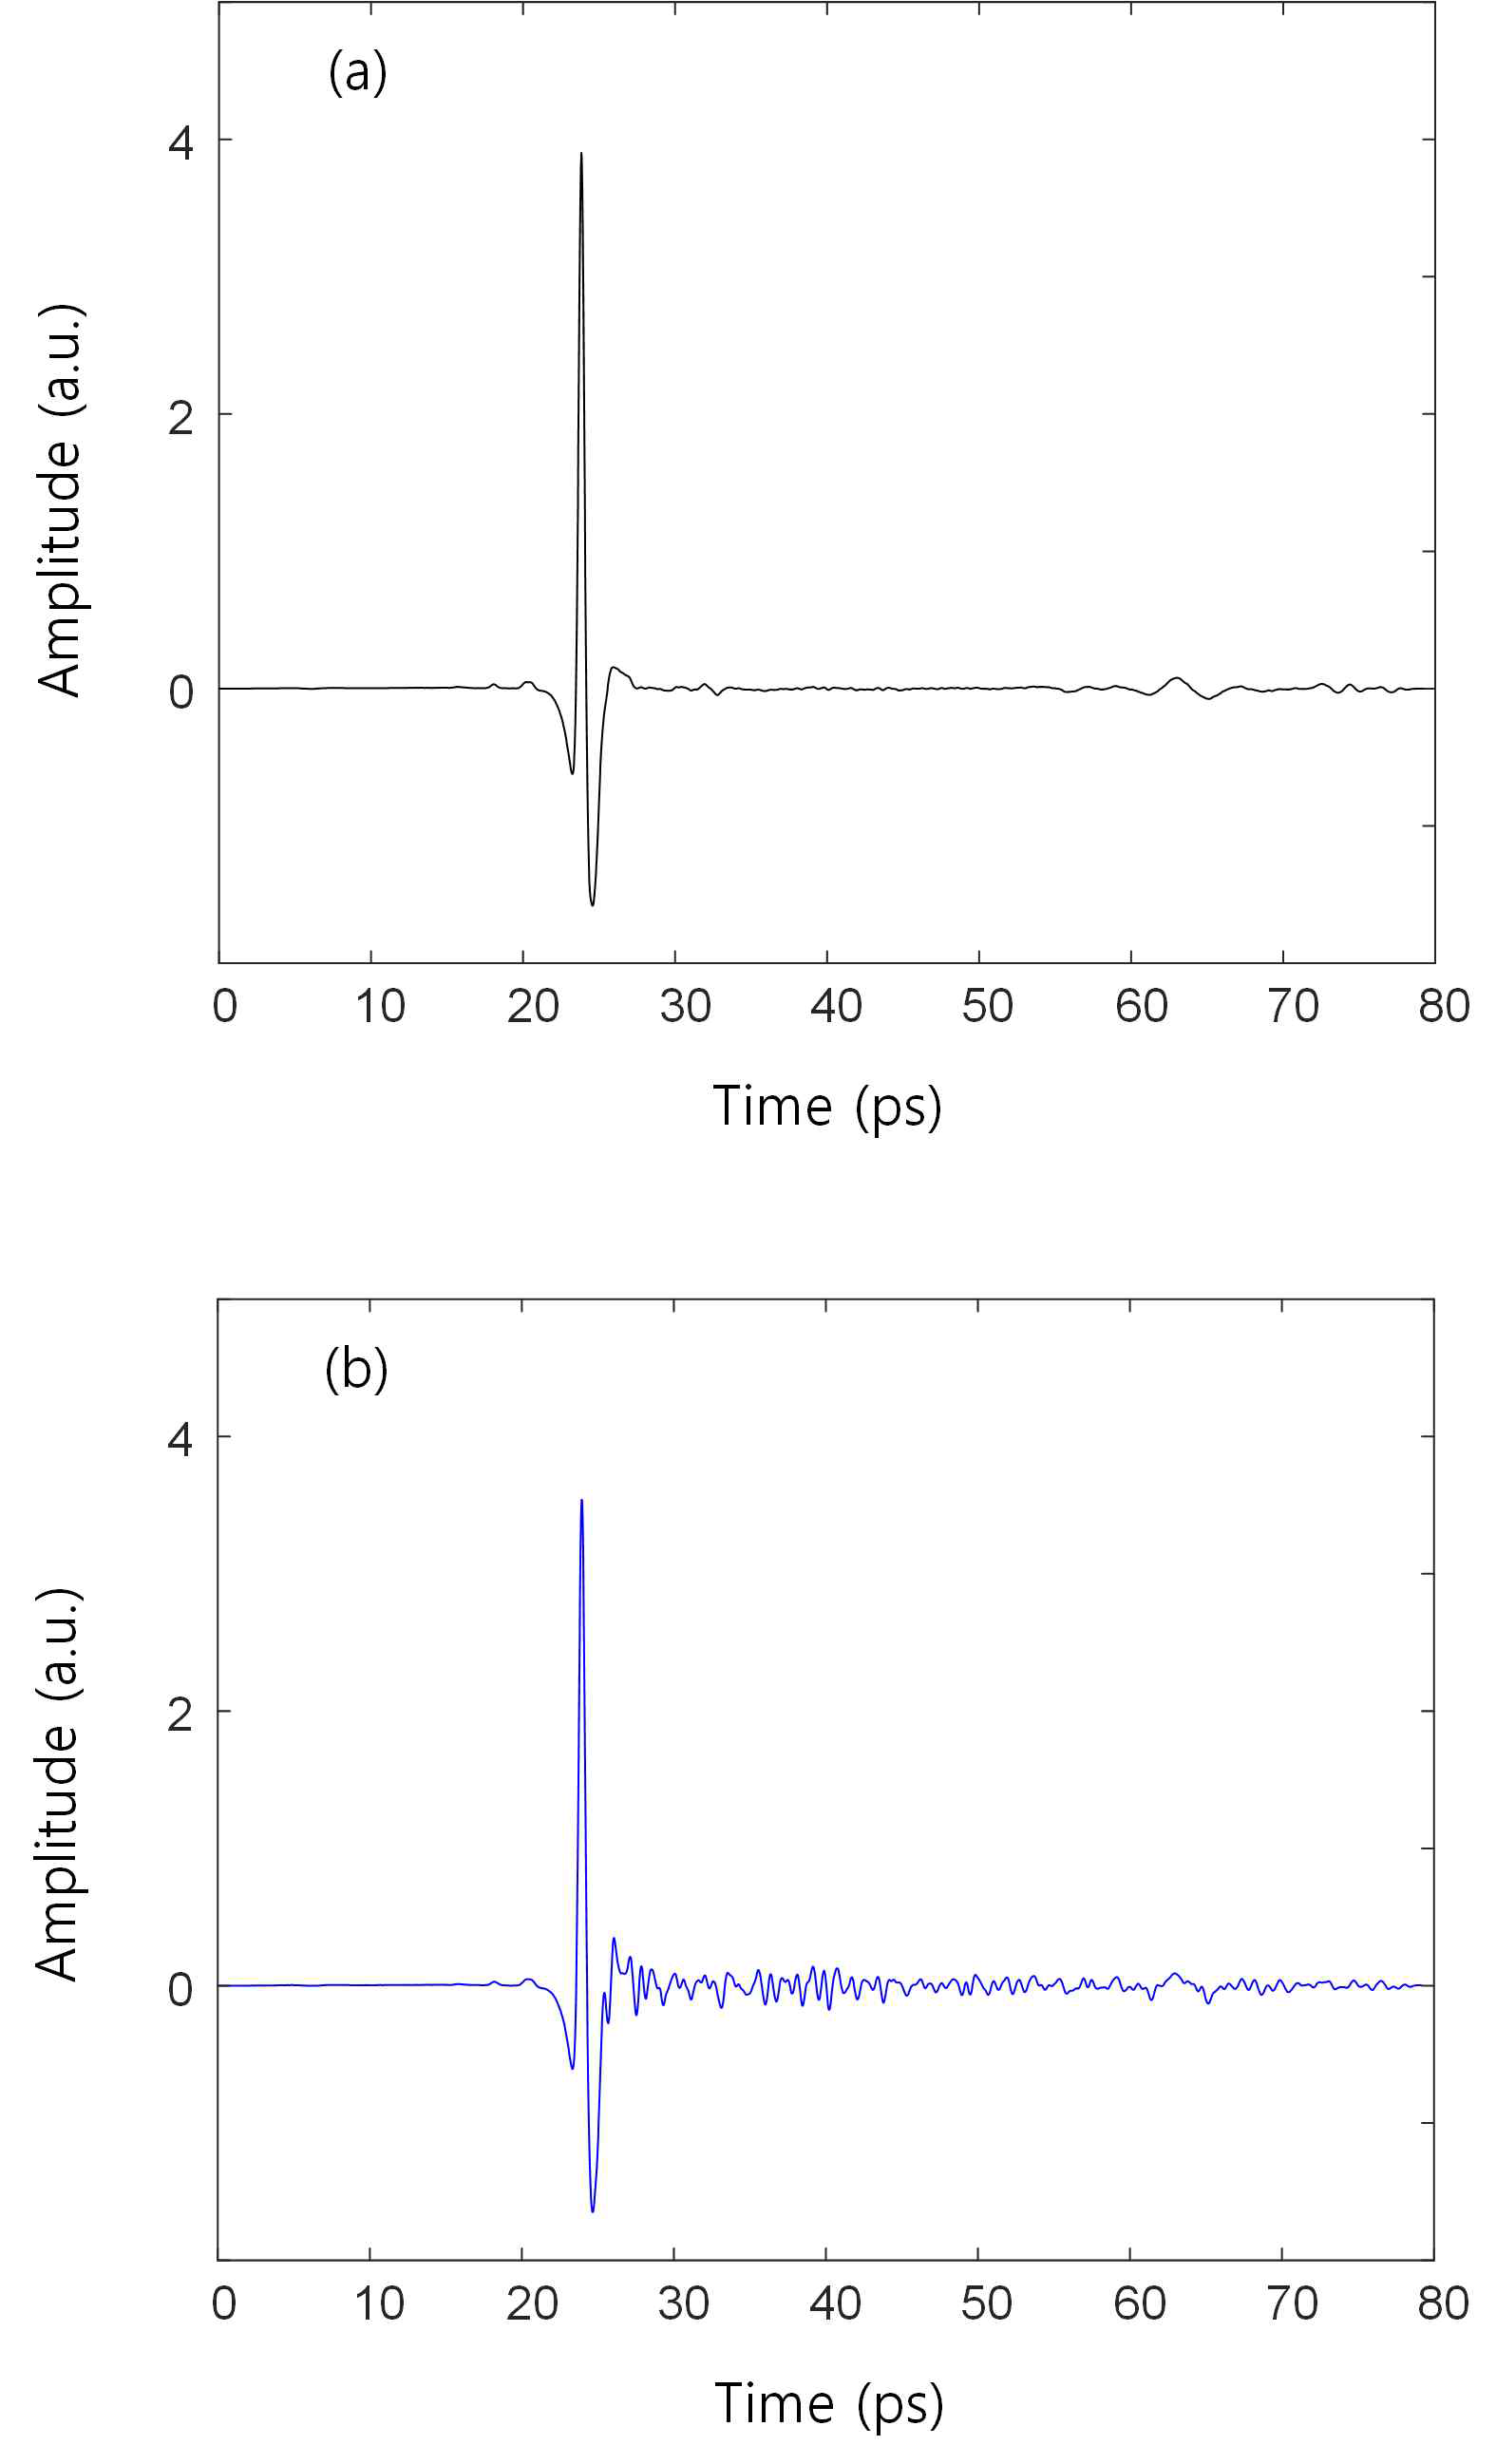 샘플이 없을 때 통제된 환경과 (a) 일반적인 대기에서 (b) 측정한 테라헤르츠 레퍼런스 신호